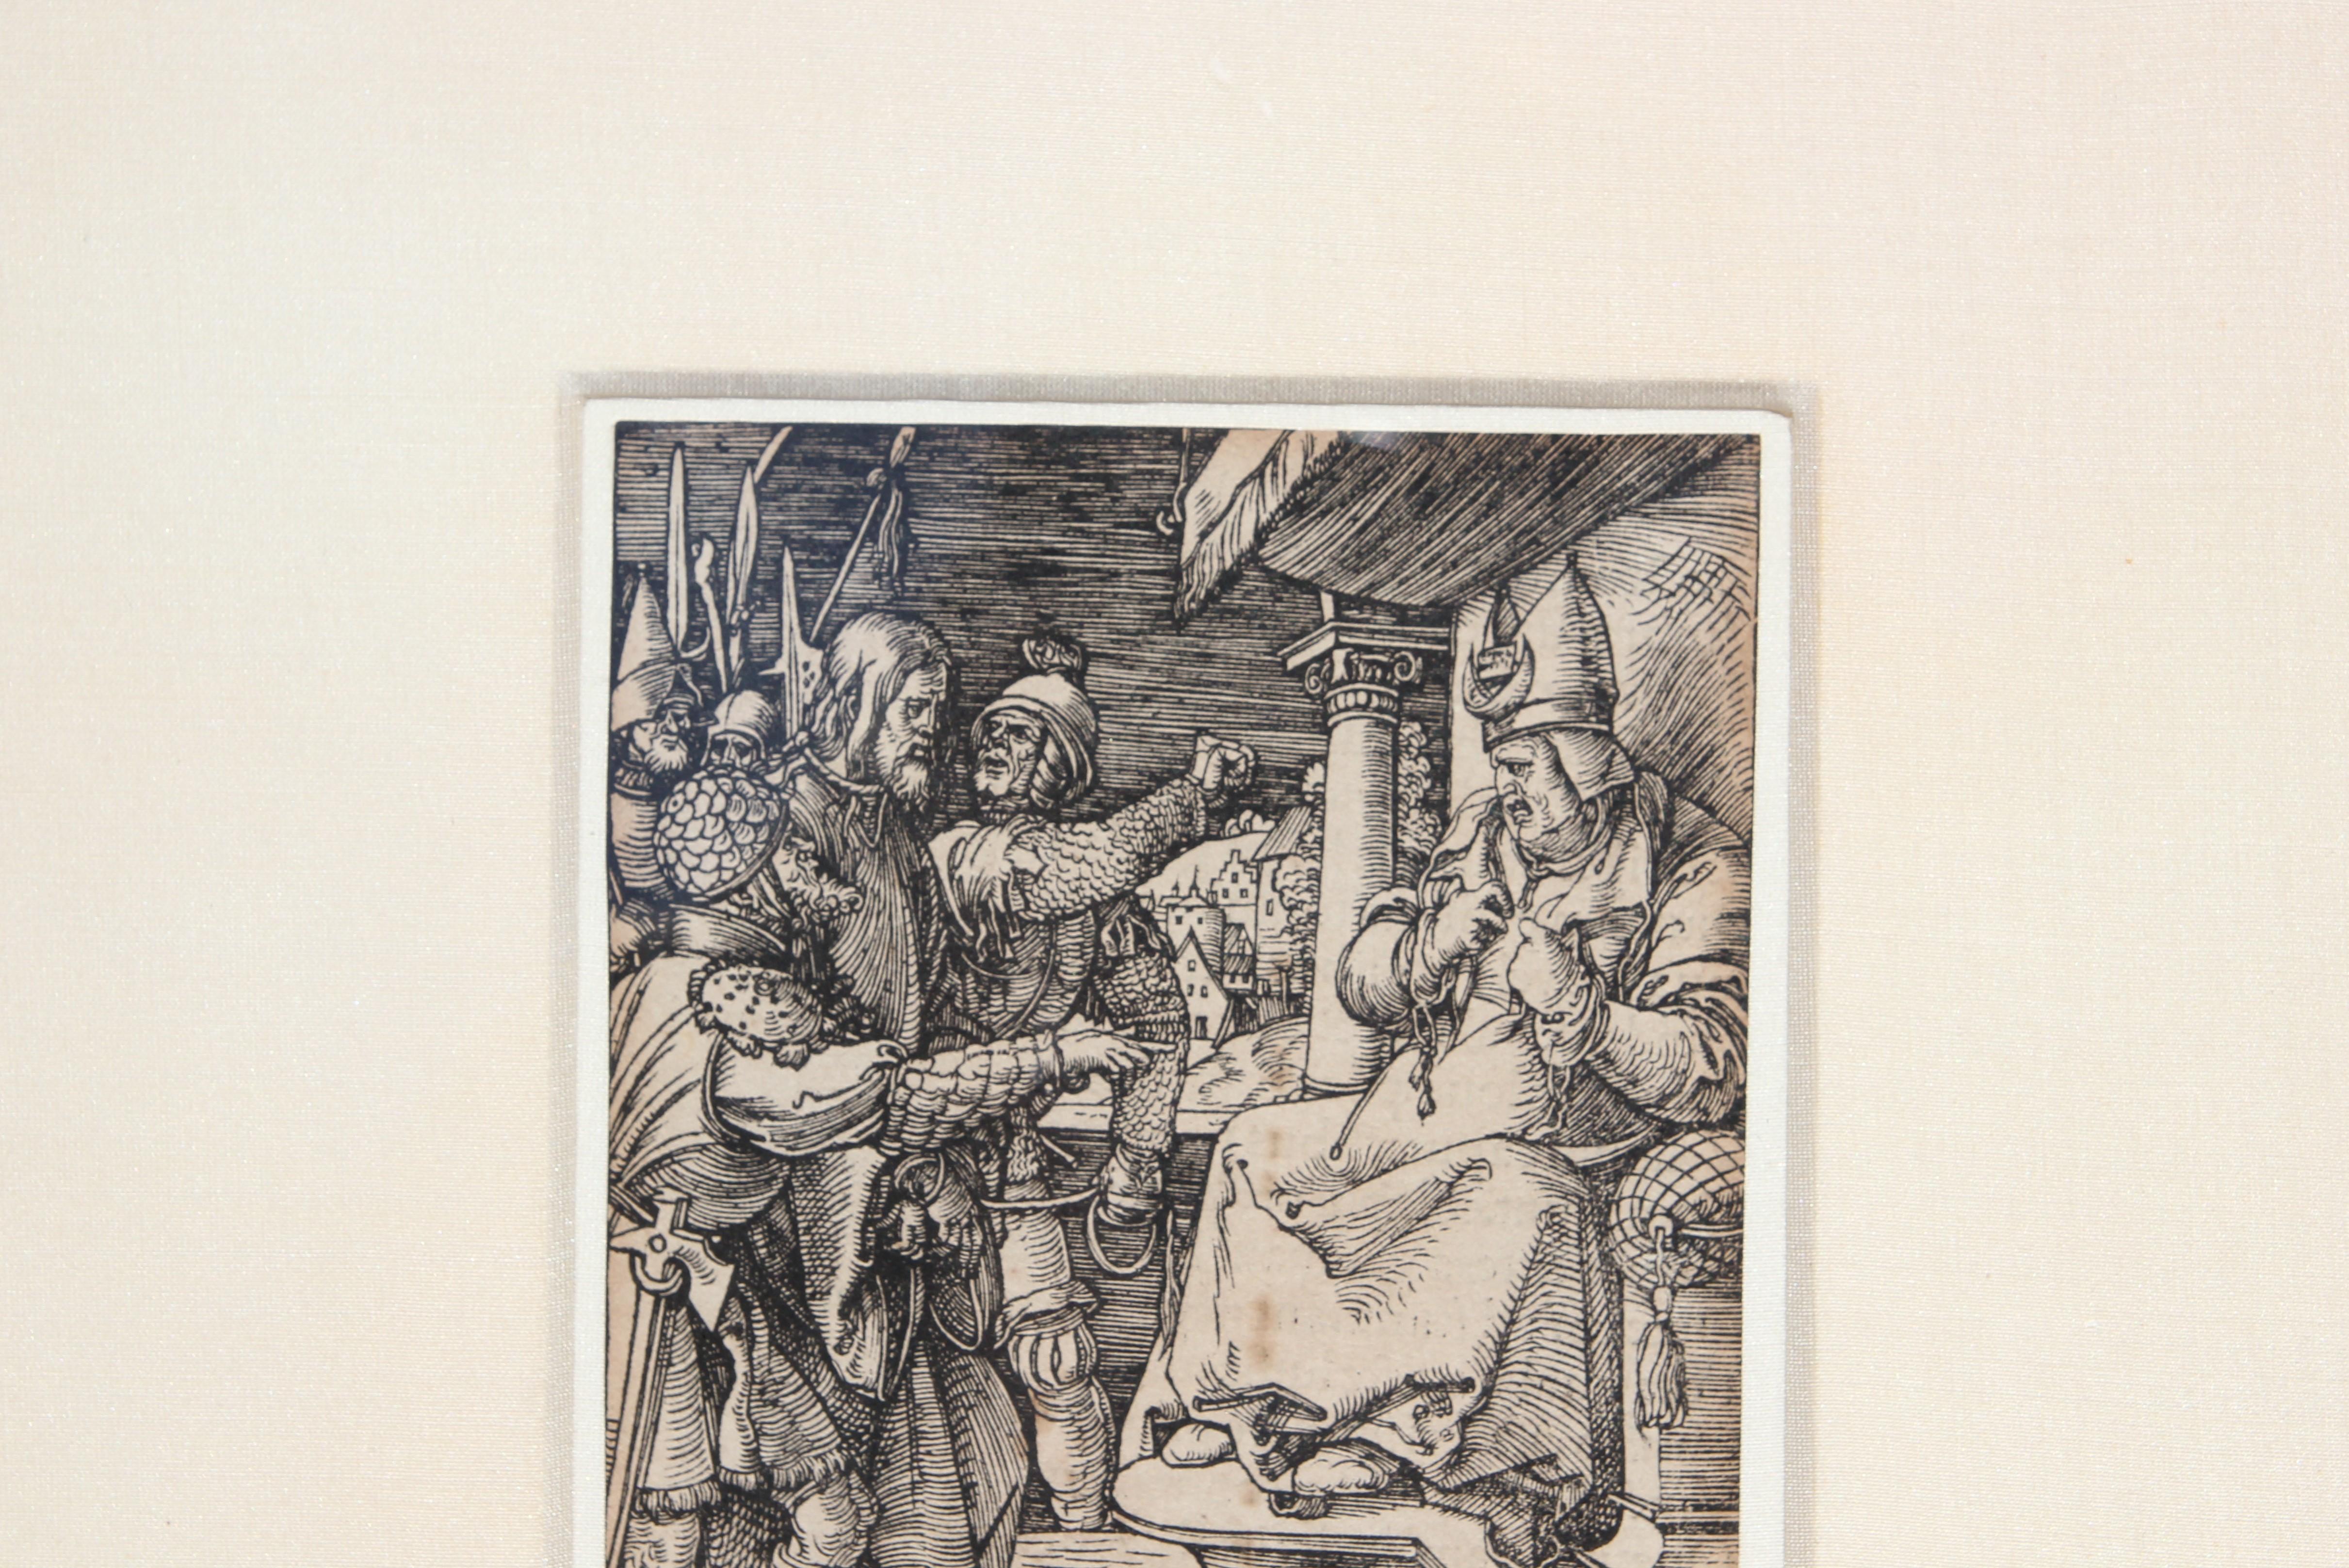 Albrecht Durer's original woodcut print titled 